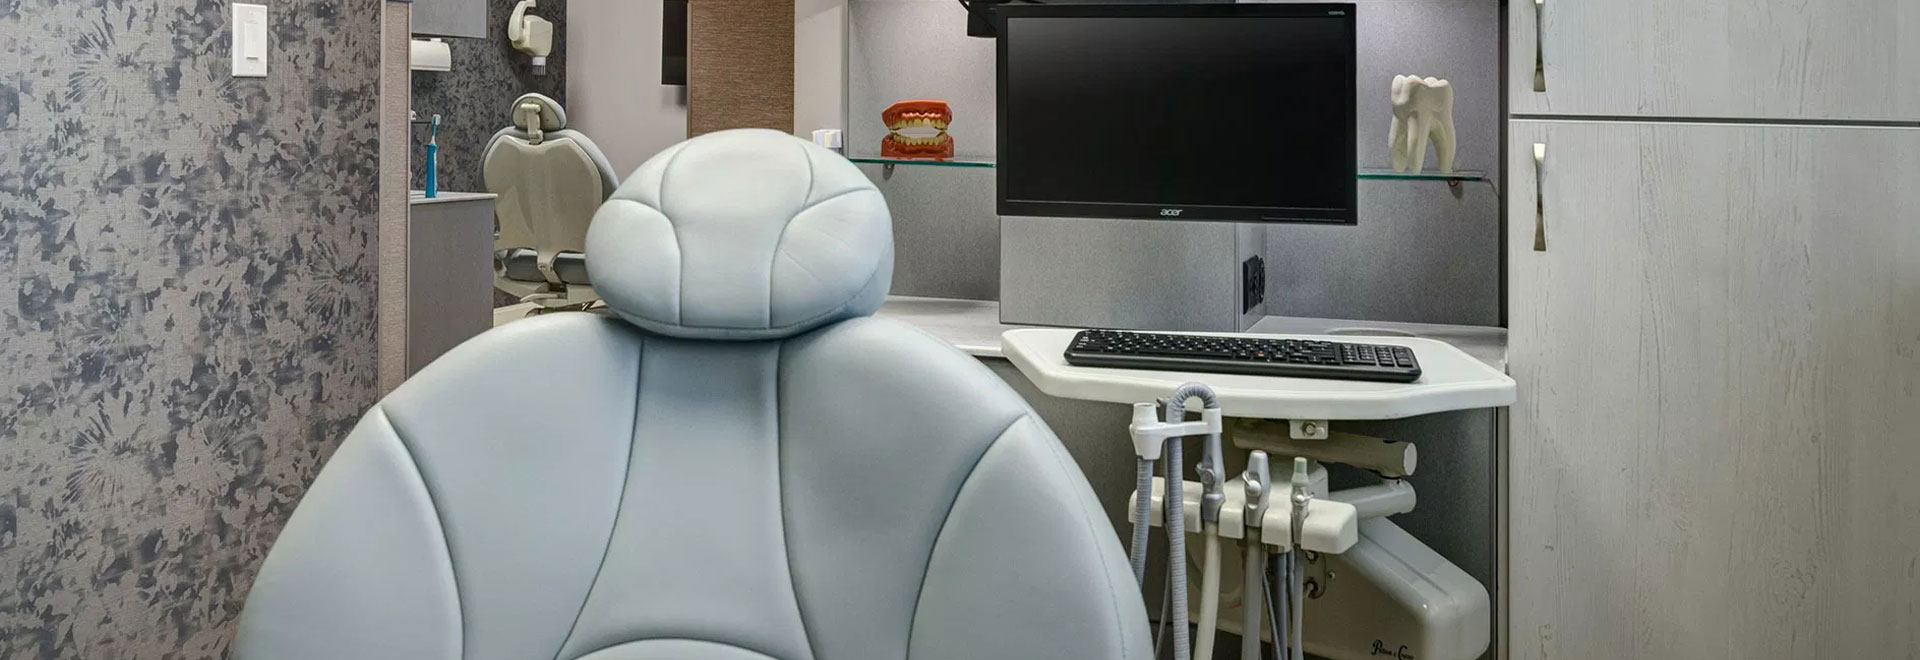 Shandley Kane Dental - Dental chair